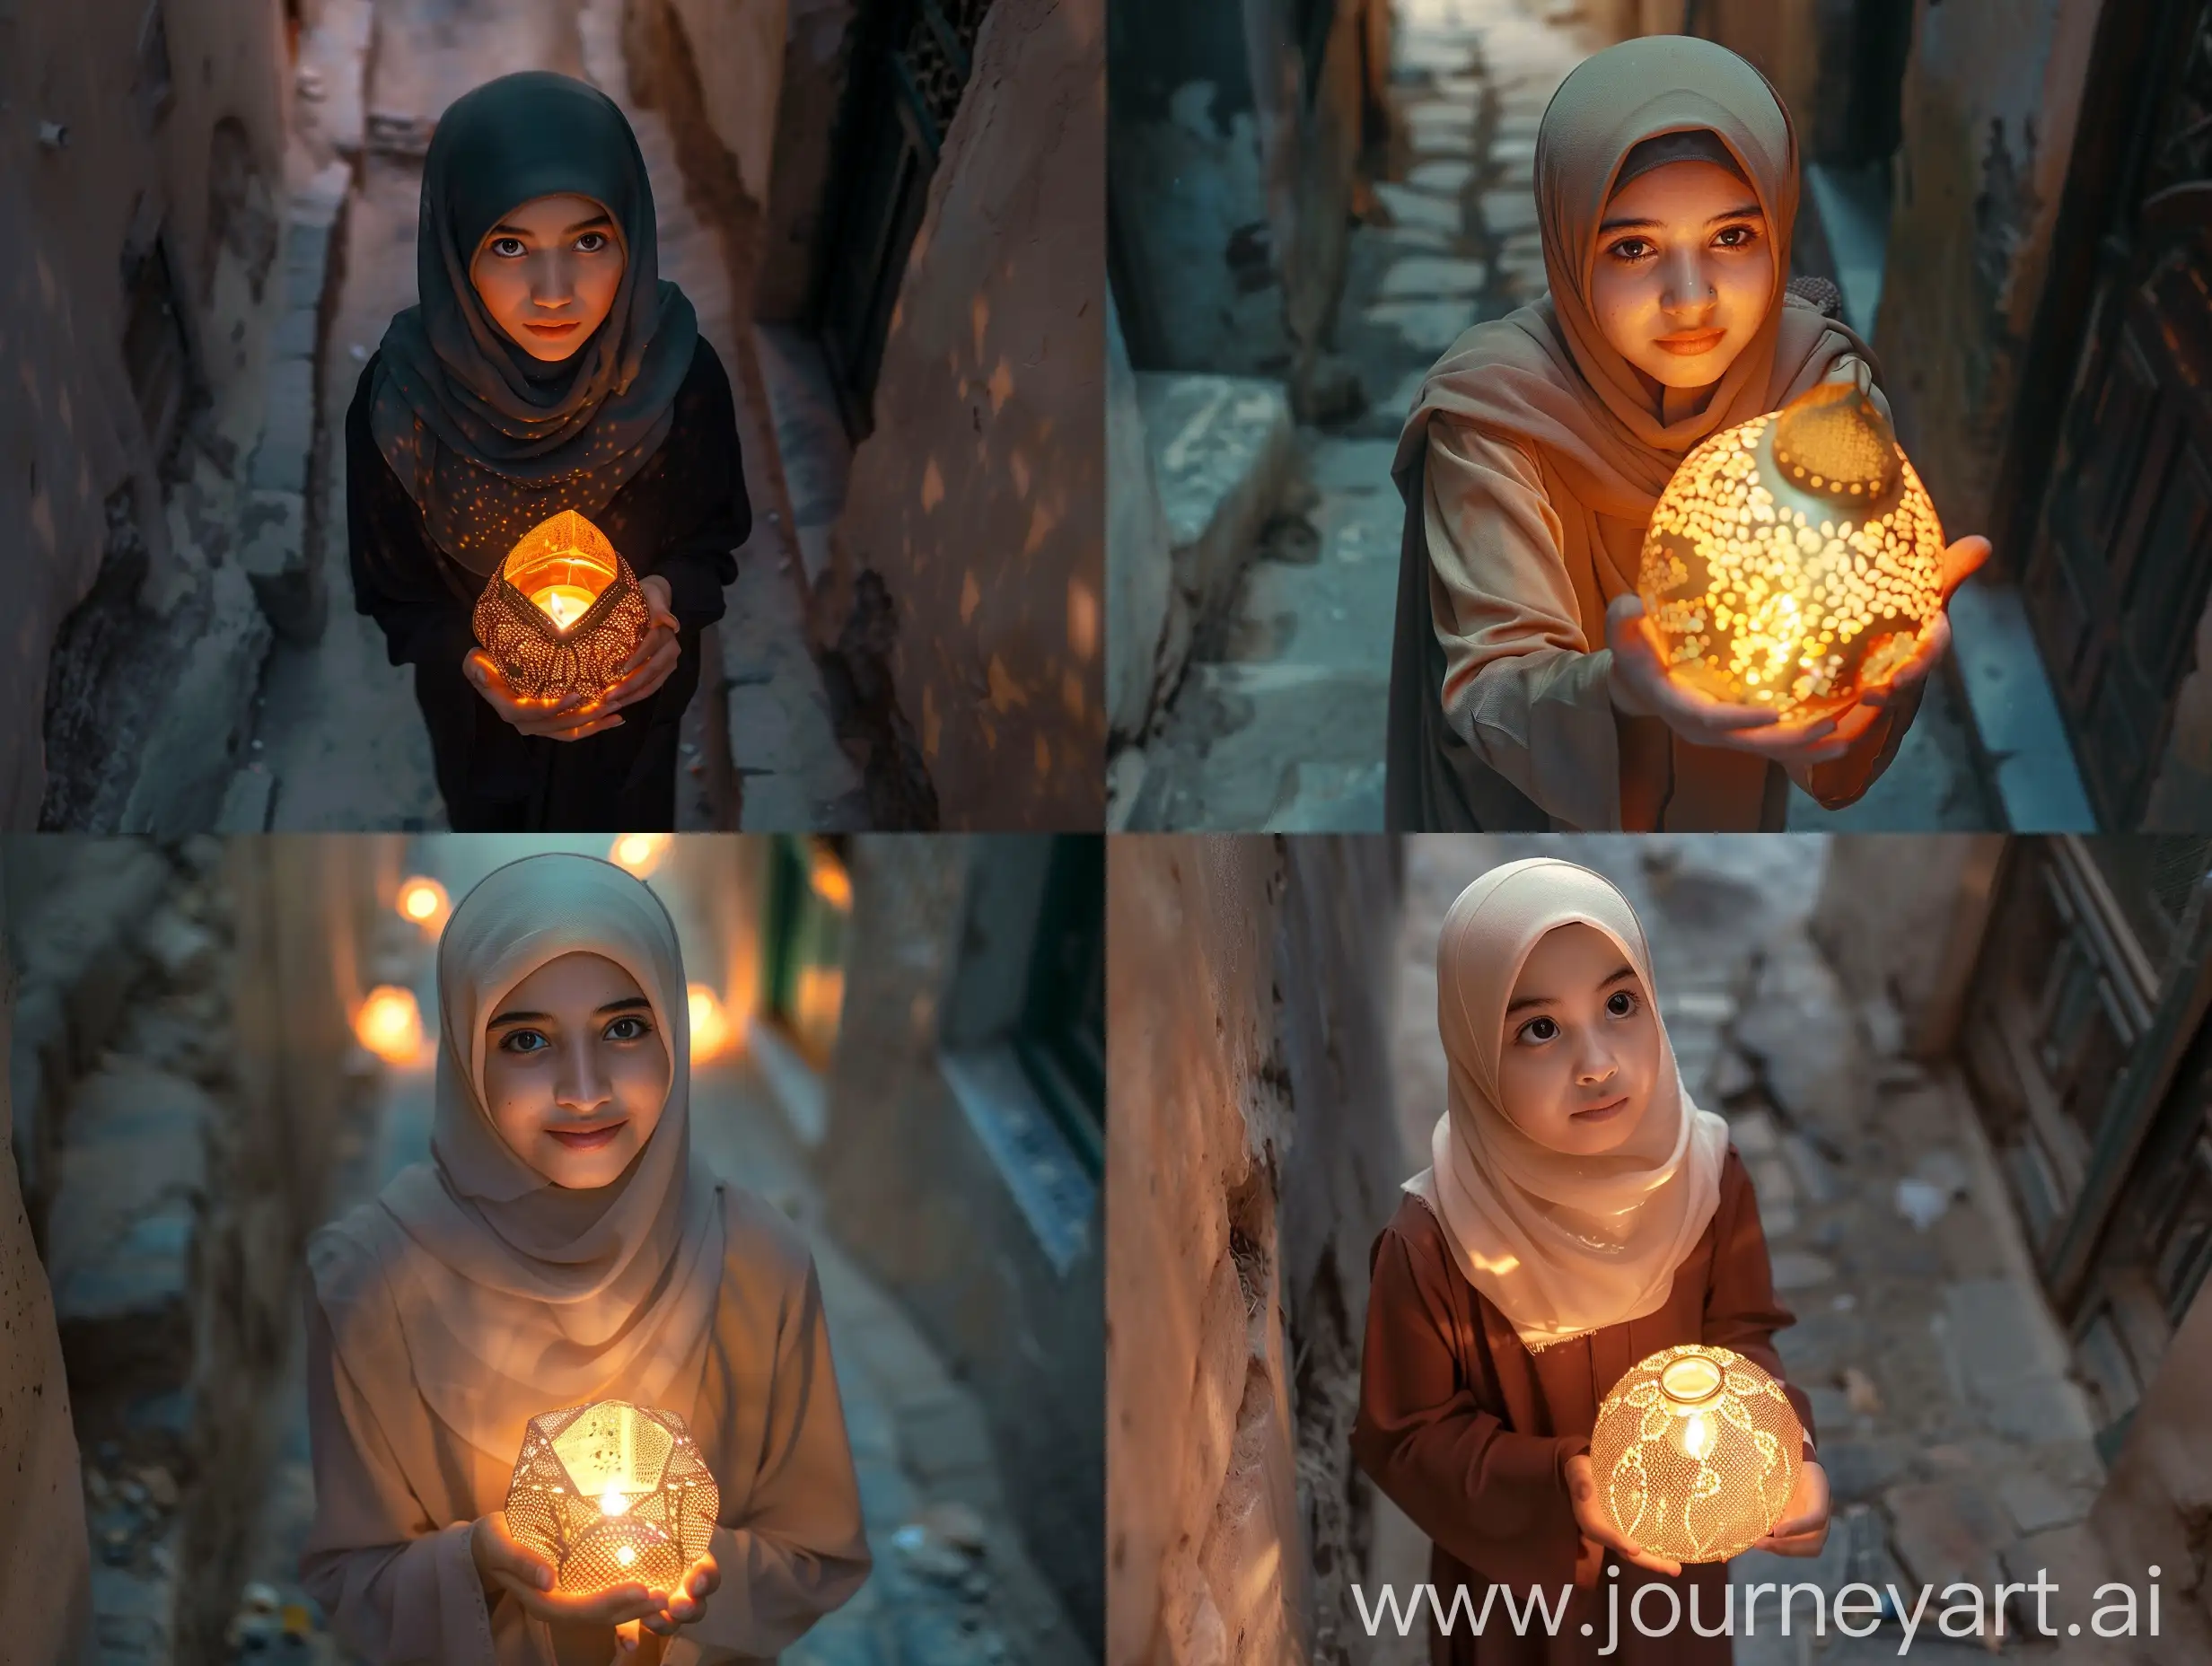 Young-Girl-with-Glowing-Ramadan-Lantern-in-Historic-Taif-Alley-Saudi-Arabia